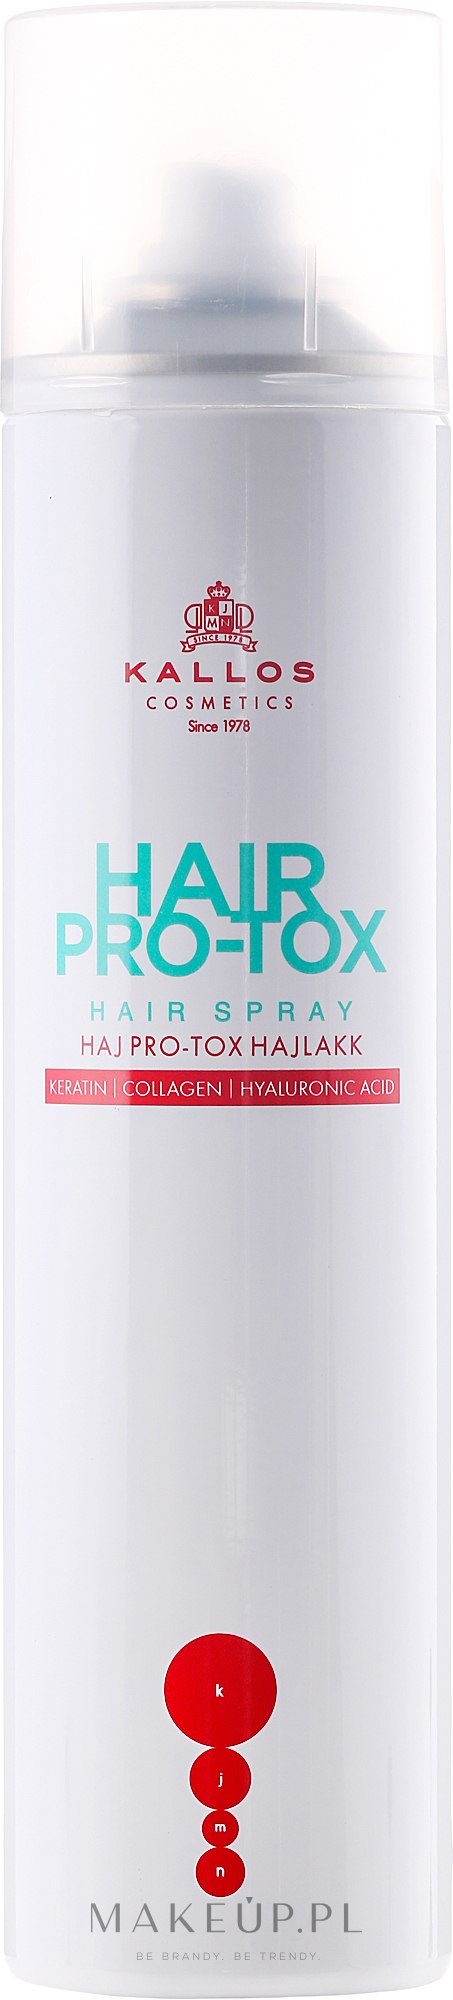 kallos pro-tox szampon wizaz